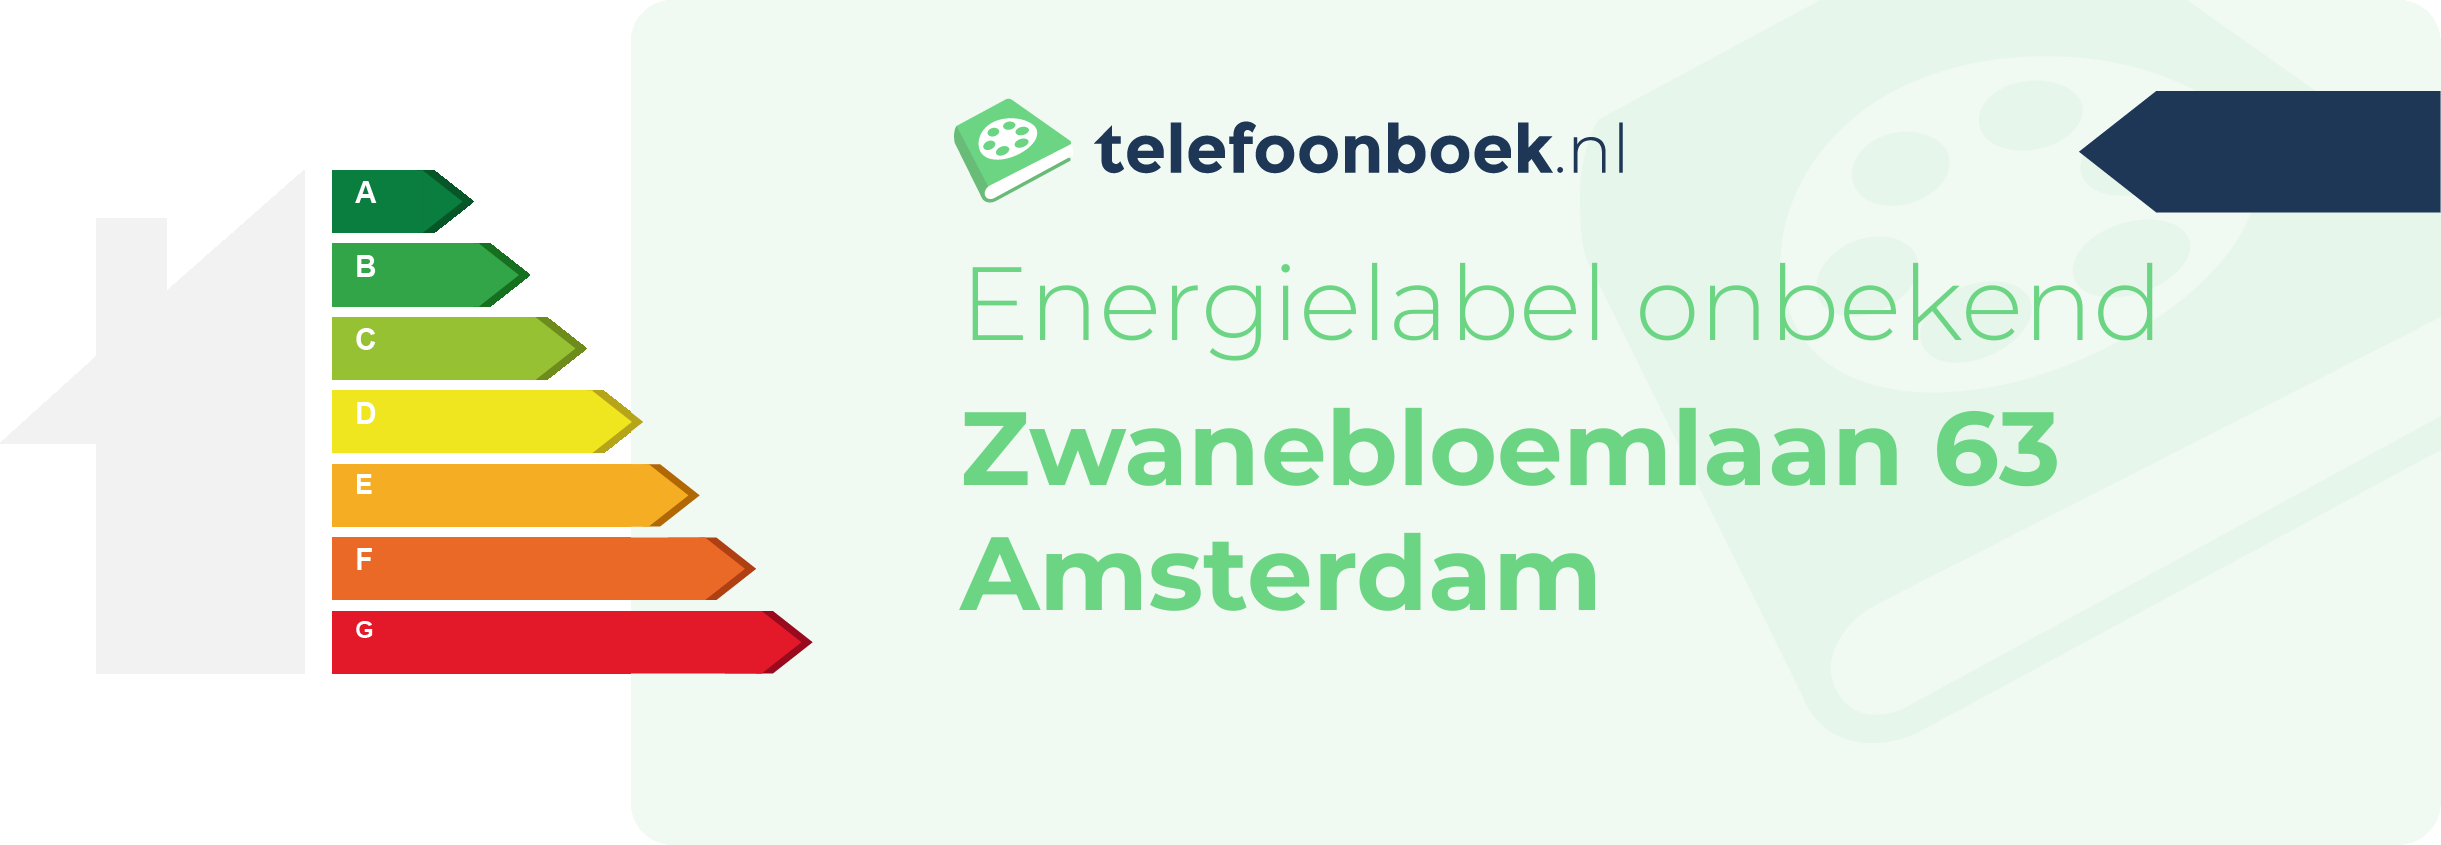 Energielabel Zwanebloemlaan 63 Amsterdam